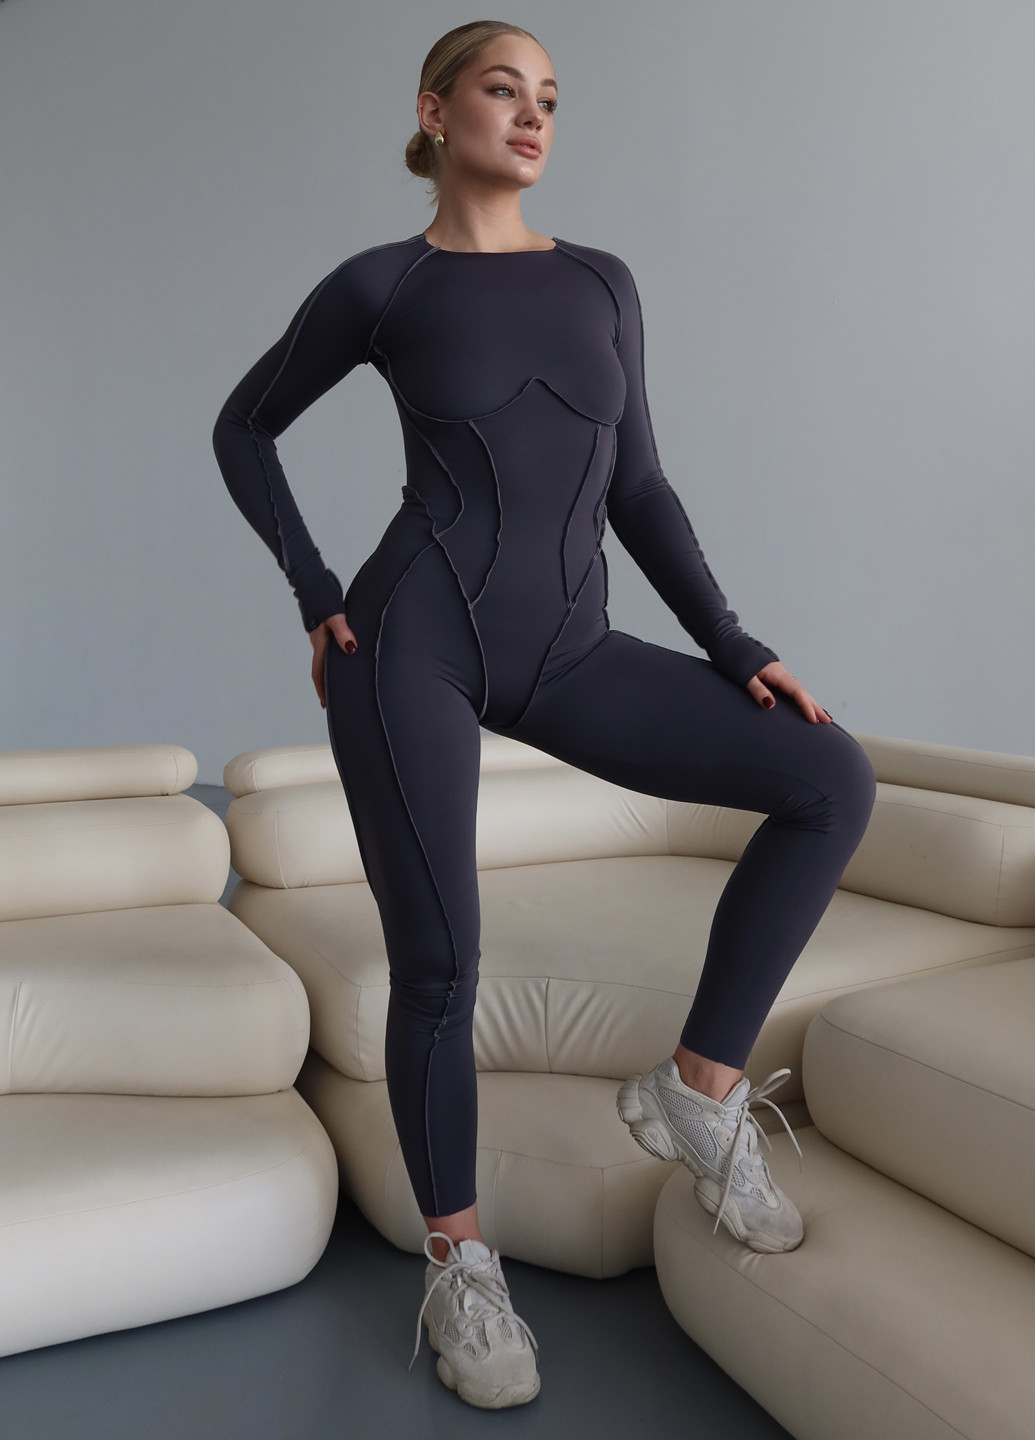 Комбинезон Asalart комбинезон-брюки однотонный графитовый спортивный нейлон, трикотаж